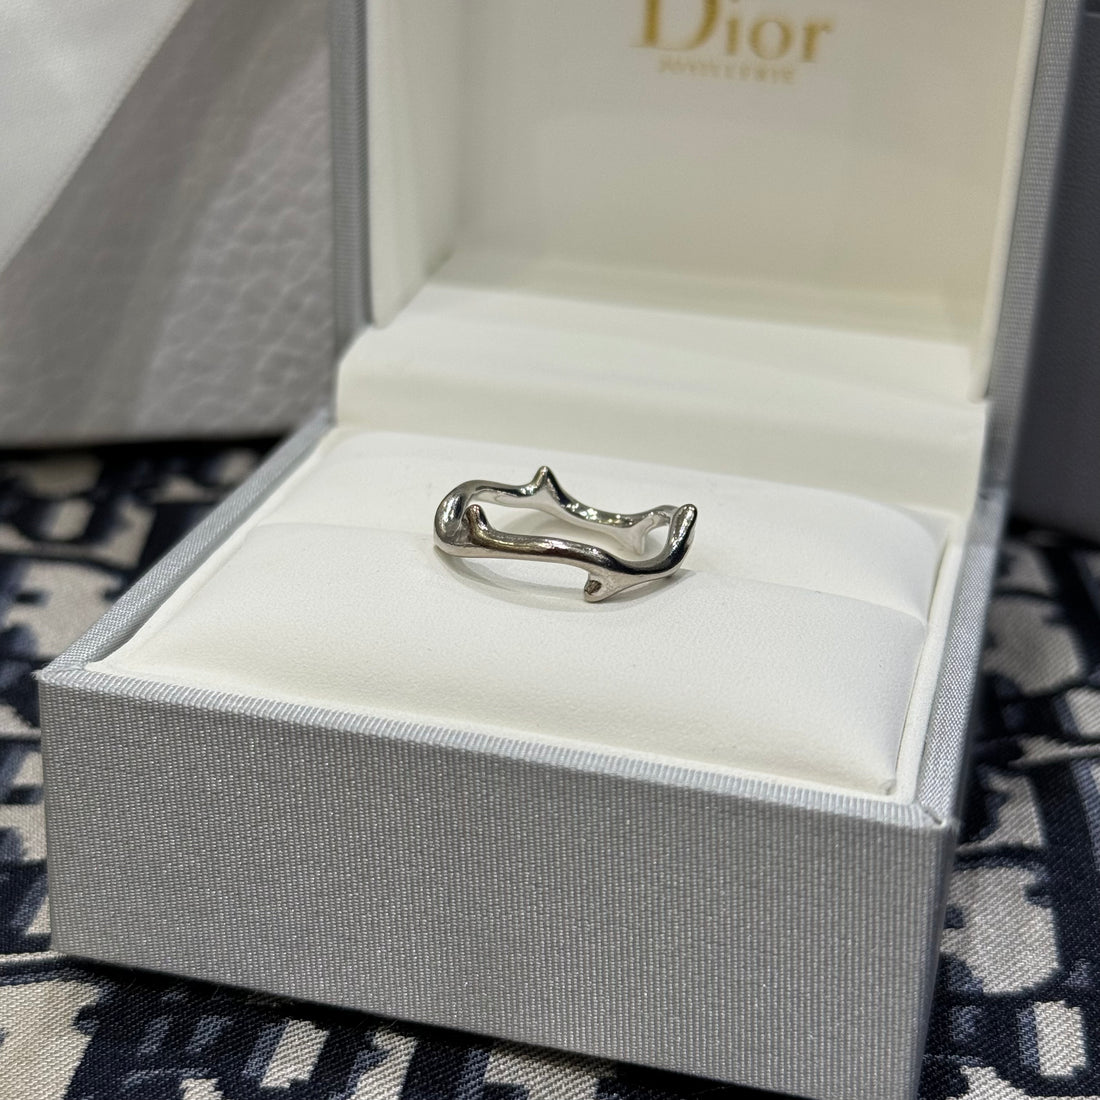 Dior - Rosewood ring